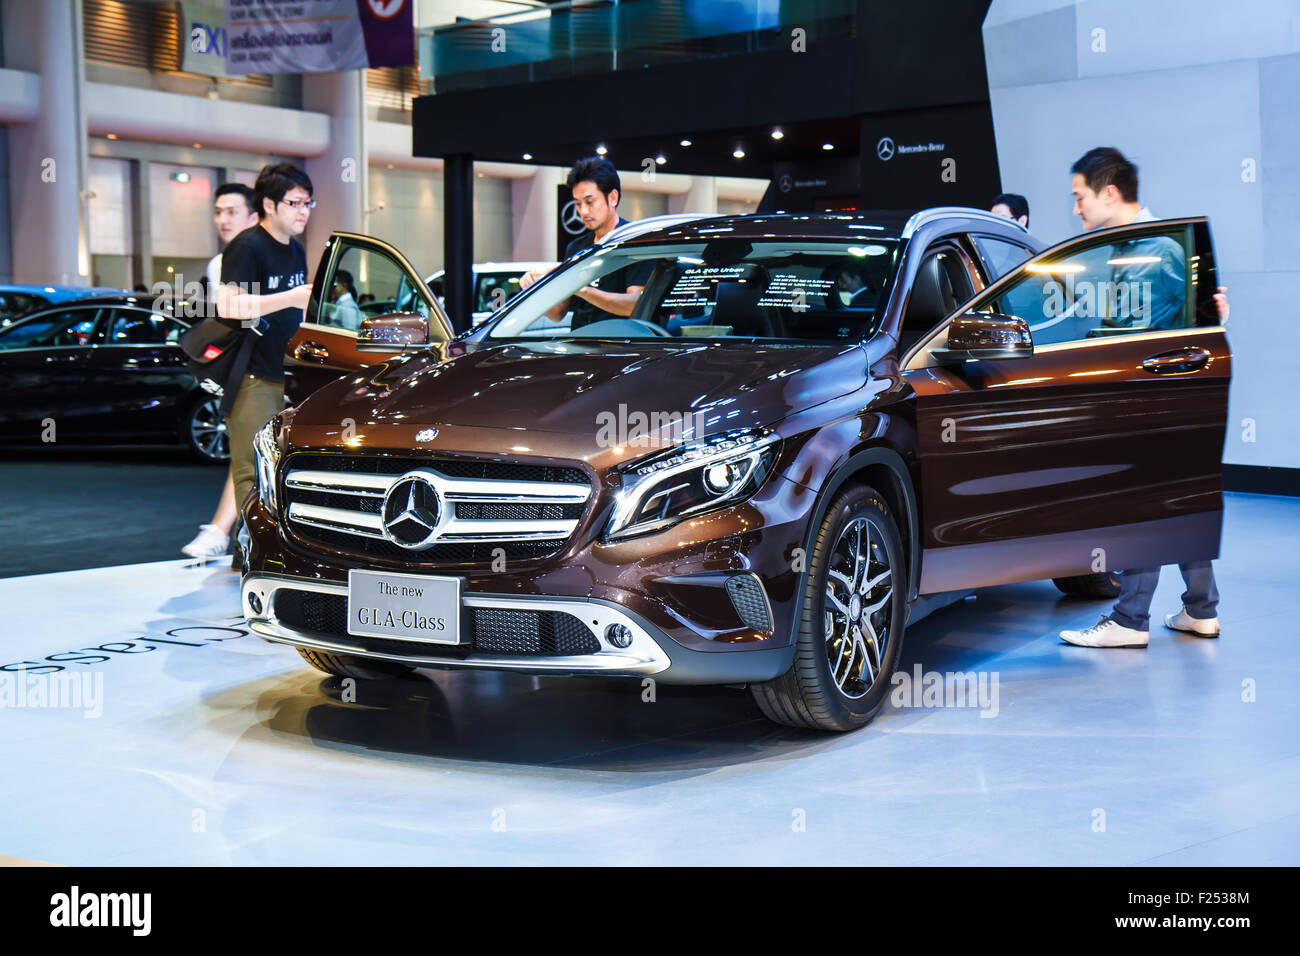 BANGKOK - 30 de marzo: Mercedes-Benz GLA-coche de clase en la exhibición en el 35º Salón Internacional del Automóvil de Bangkok en Tailandia 2014 Foto de stock